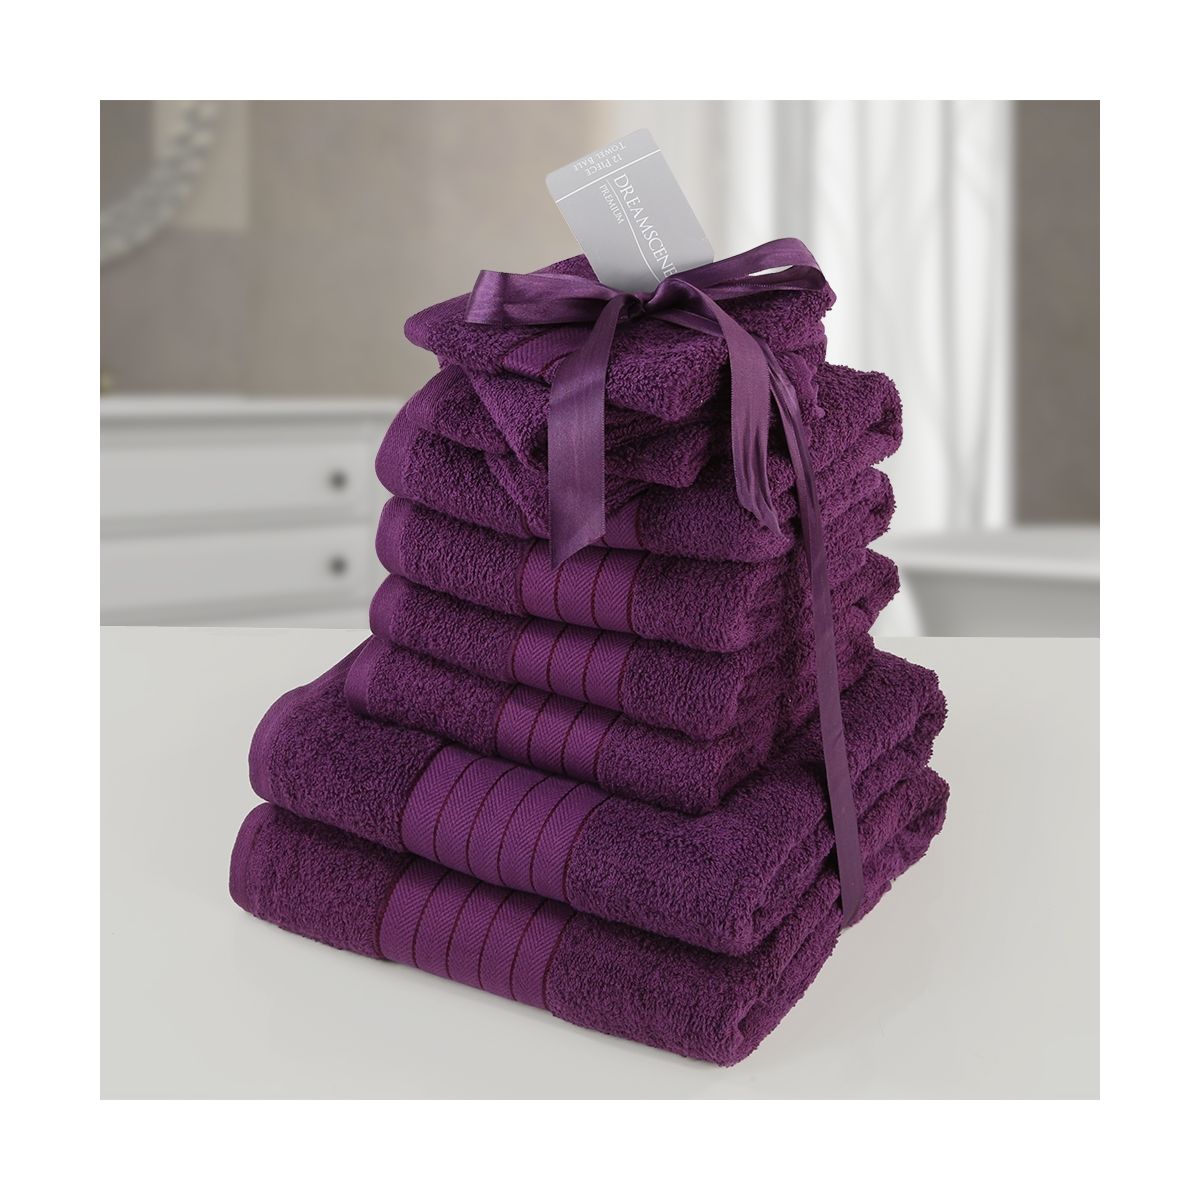 Dreamscene Towel Bale 10 Piece - Purple